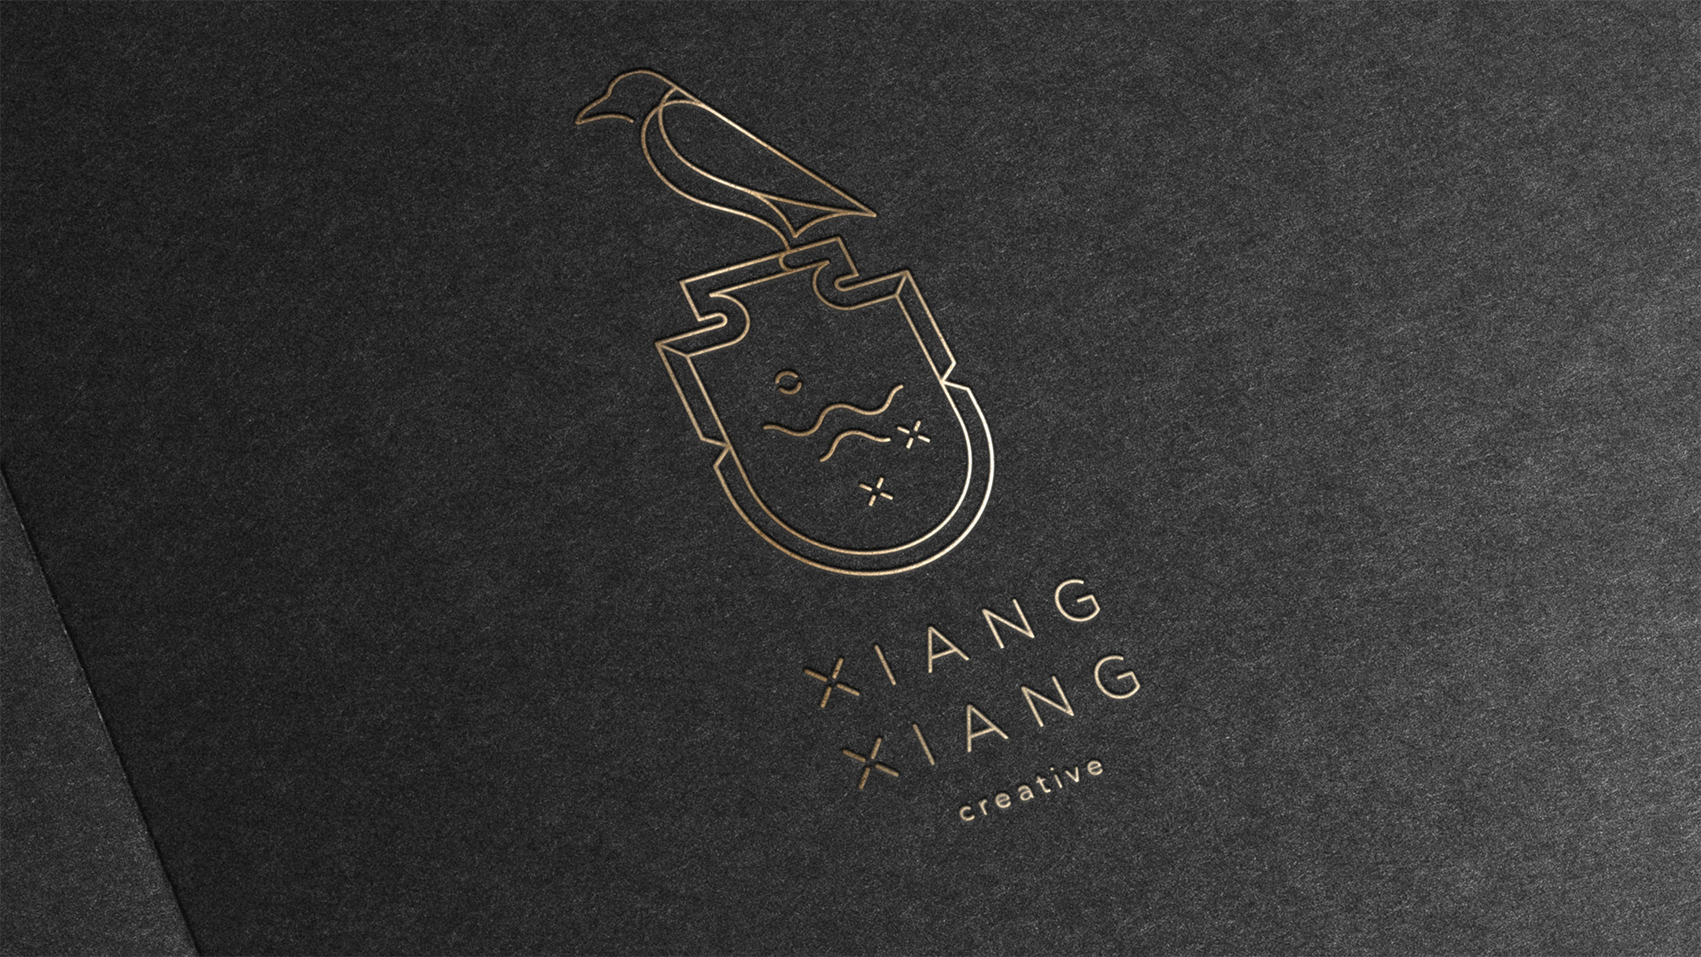 XiangXiang Creative studio